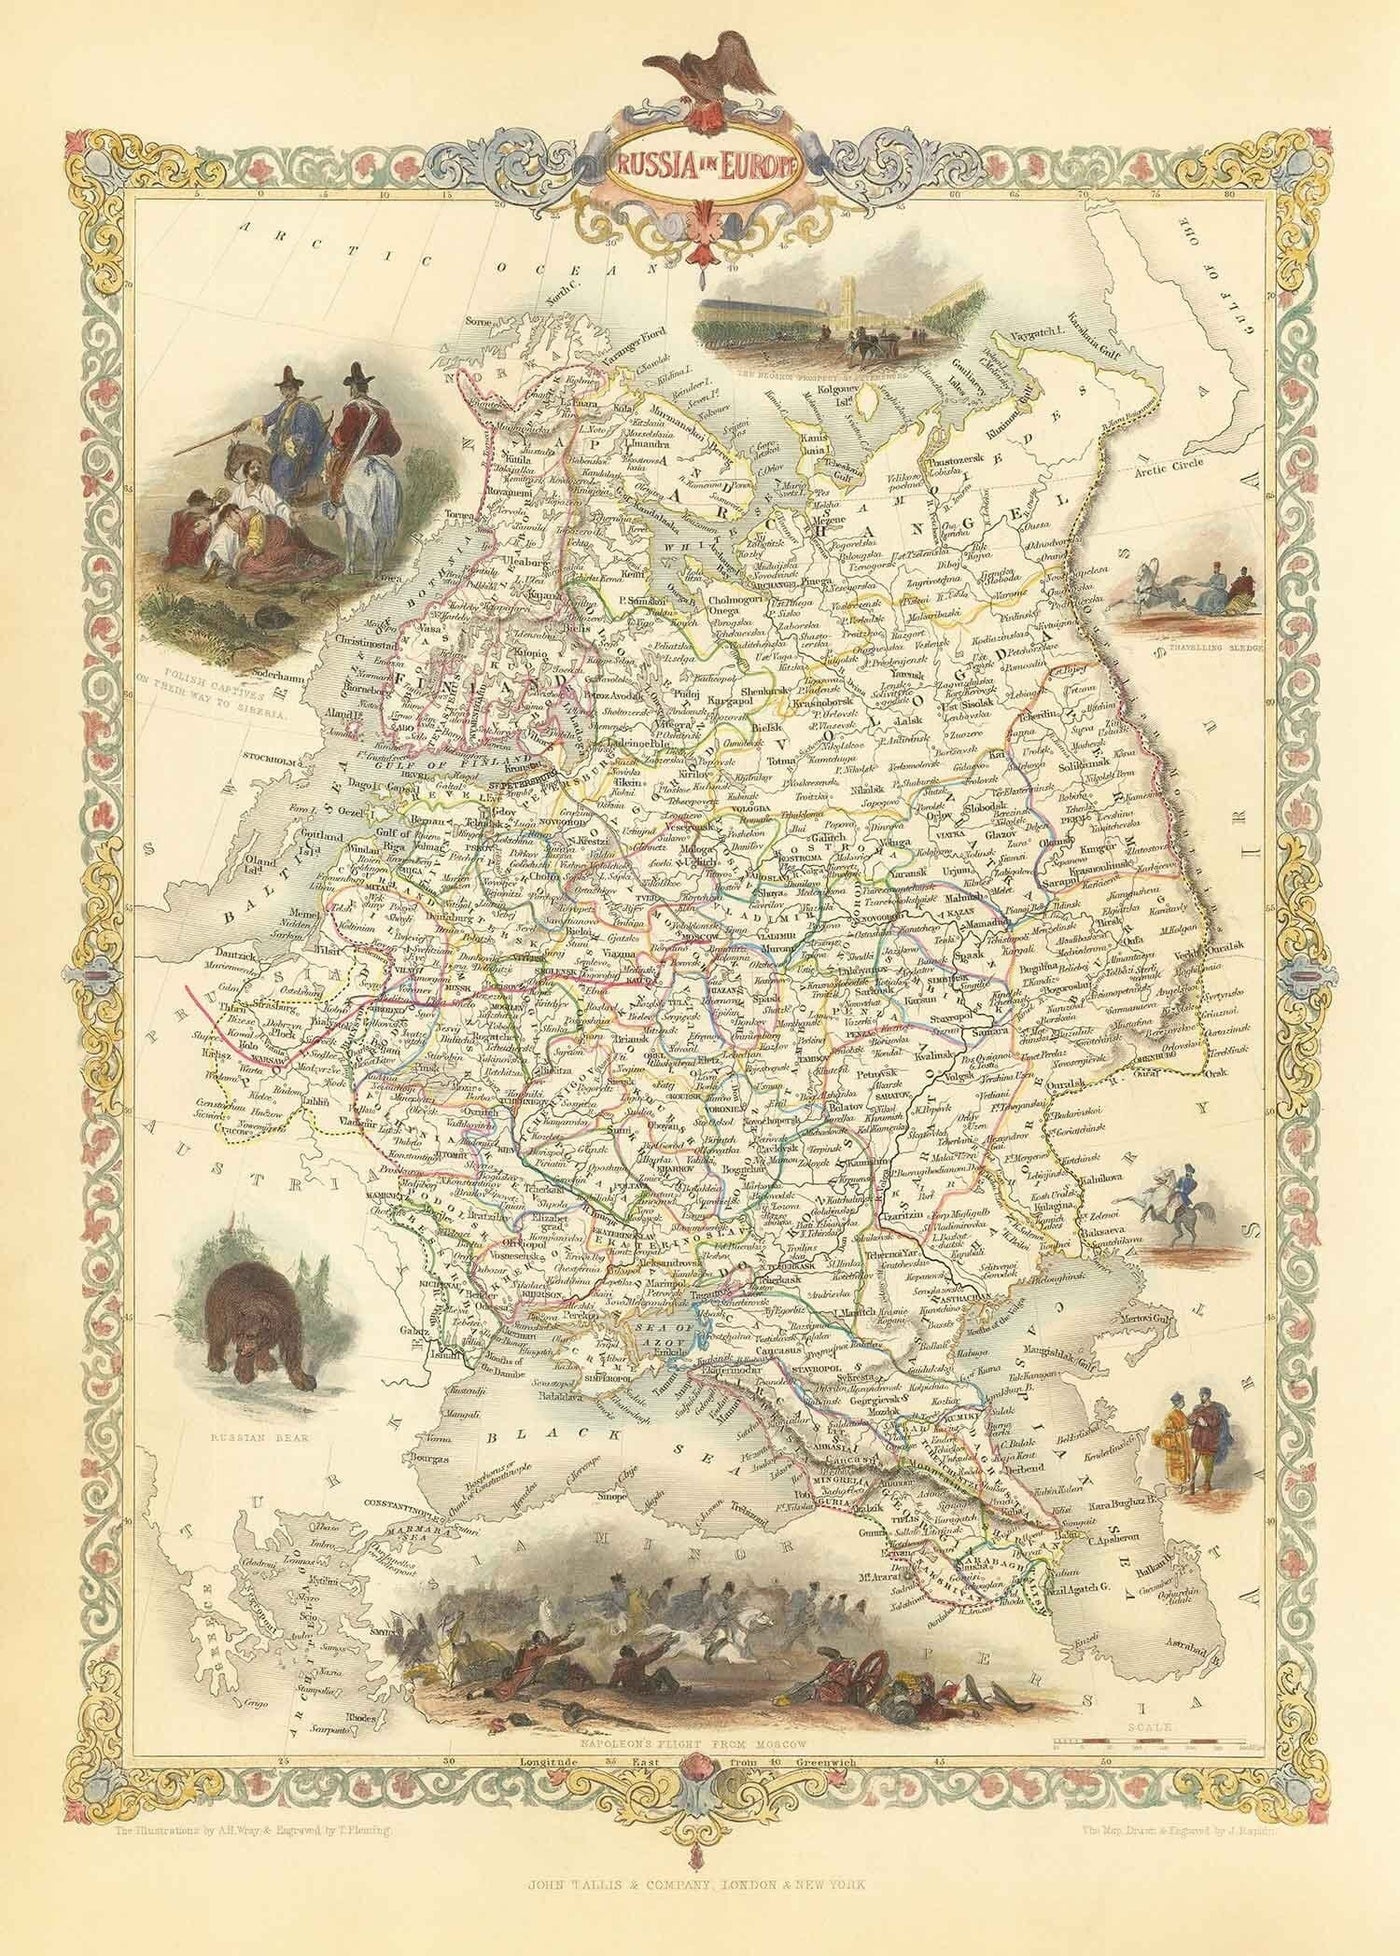 Alte Karte des russischen Reiches in Europa, 1851 - Moskau, Napoleon, Finnland, Krim, Ukraine, Minsk, St. Petersburg